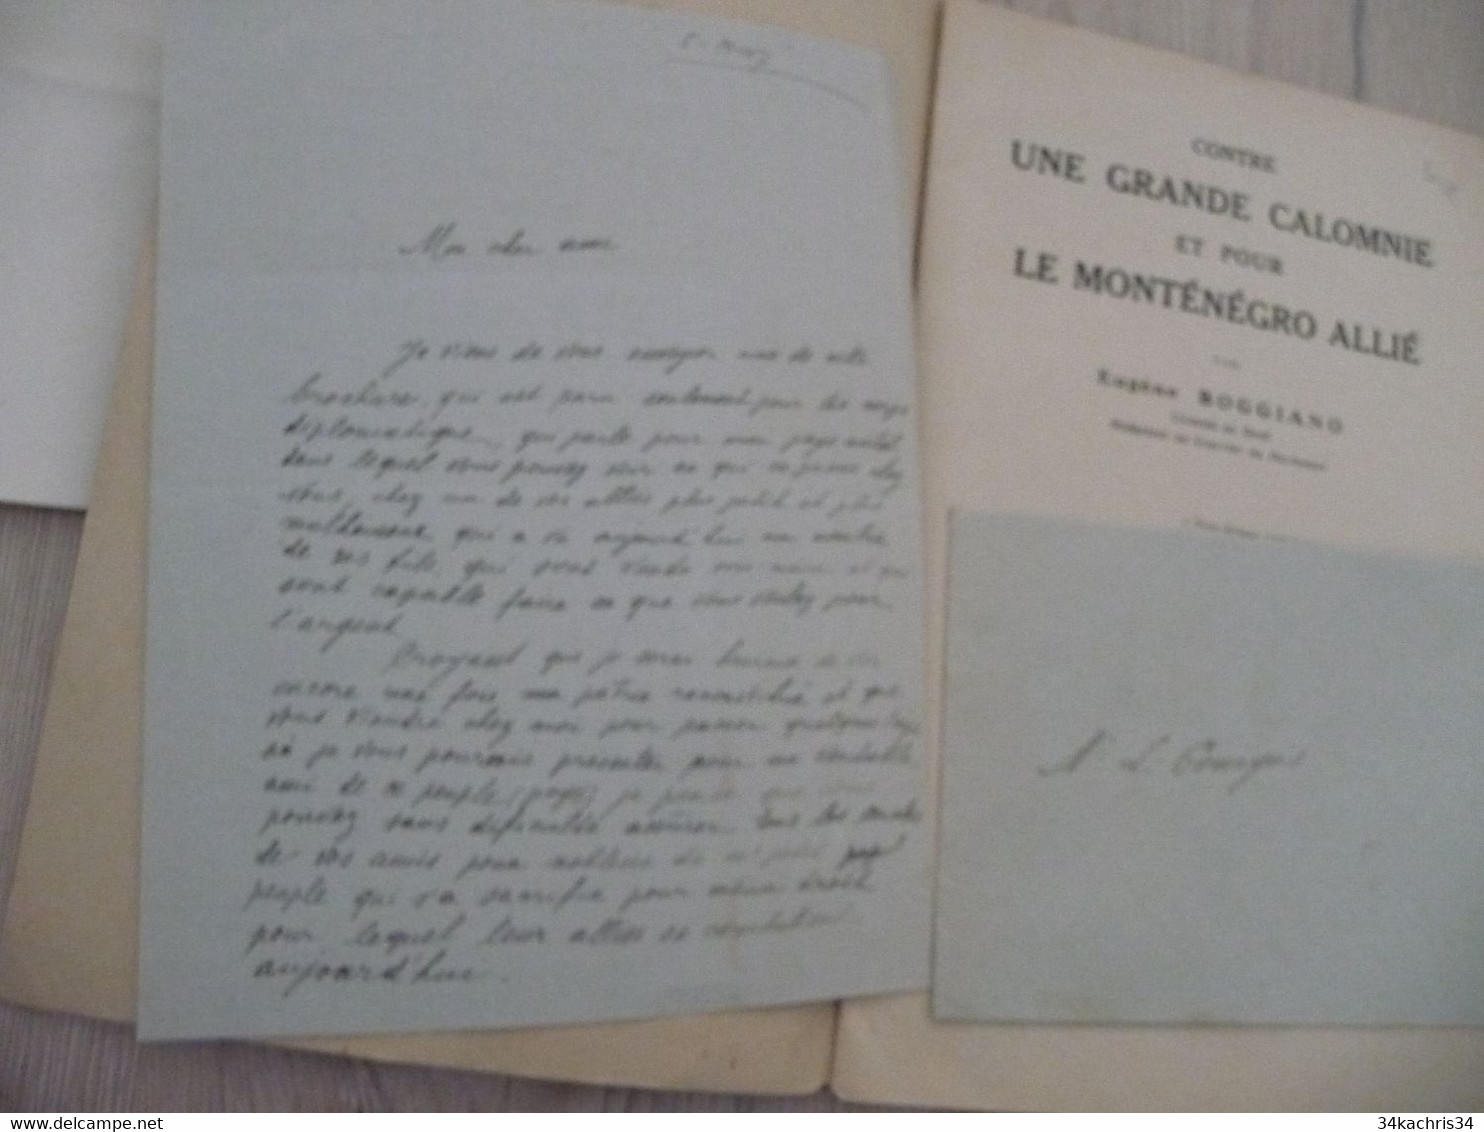 1917 Réservée Au Corps Diplomatique + Lettre Manuscrit Explicatif Boggiano Contre Une Grande Calomnie Pour Le Monténégro - Documenten